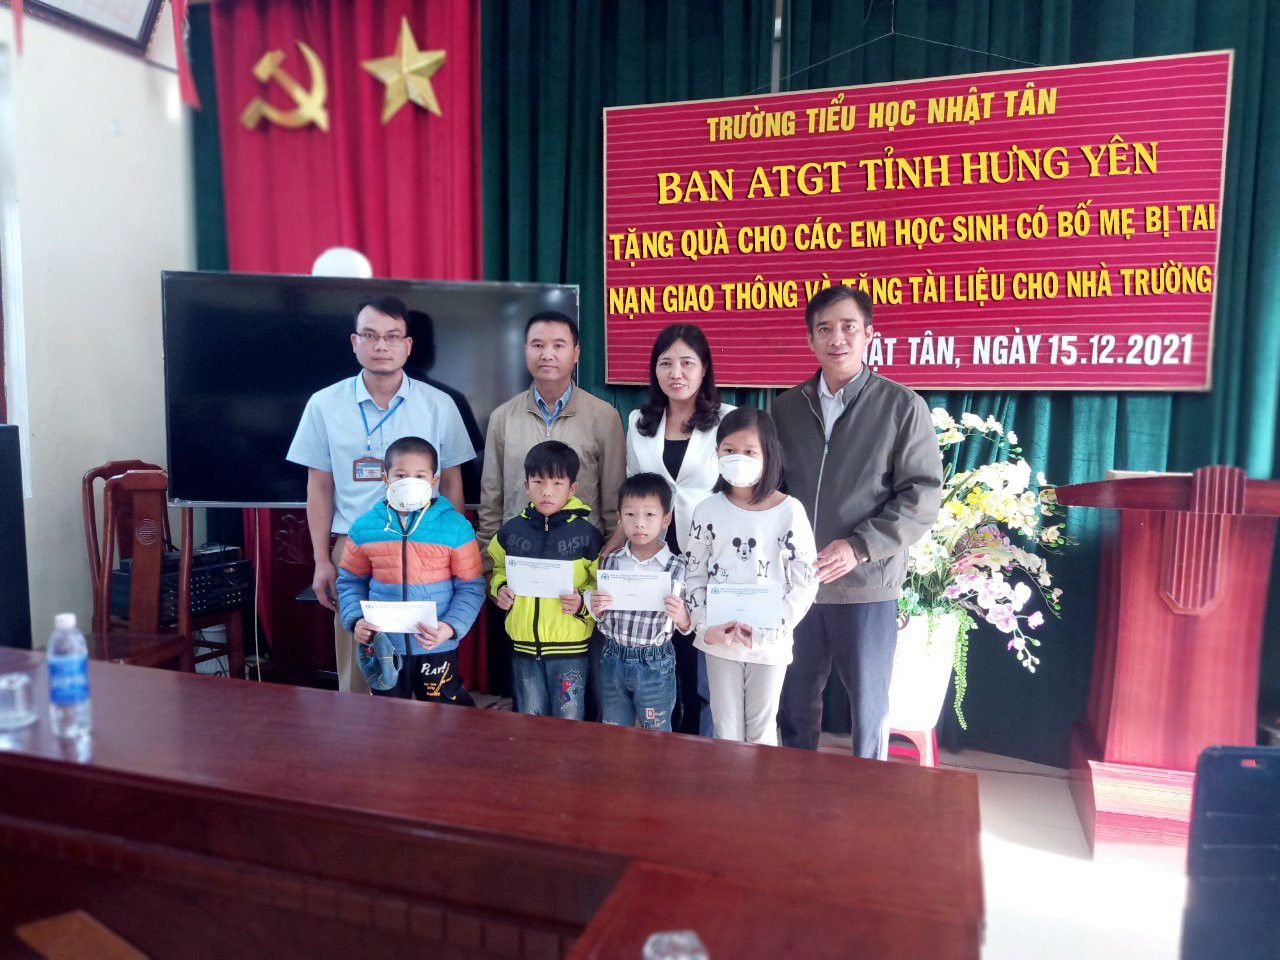 Ban ATGT tỉnh Hưng Yên tặng quà cho HS và tài liệu cho Trường Tiểu học Nhật Tân